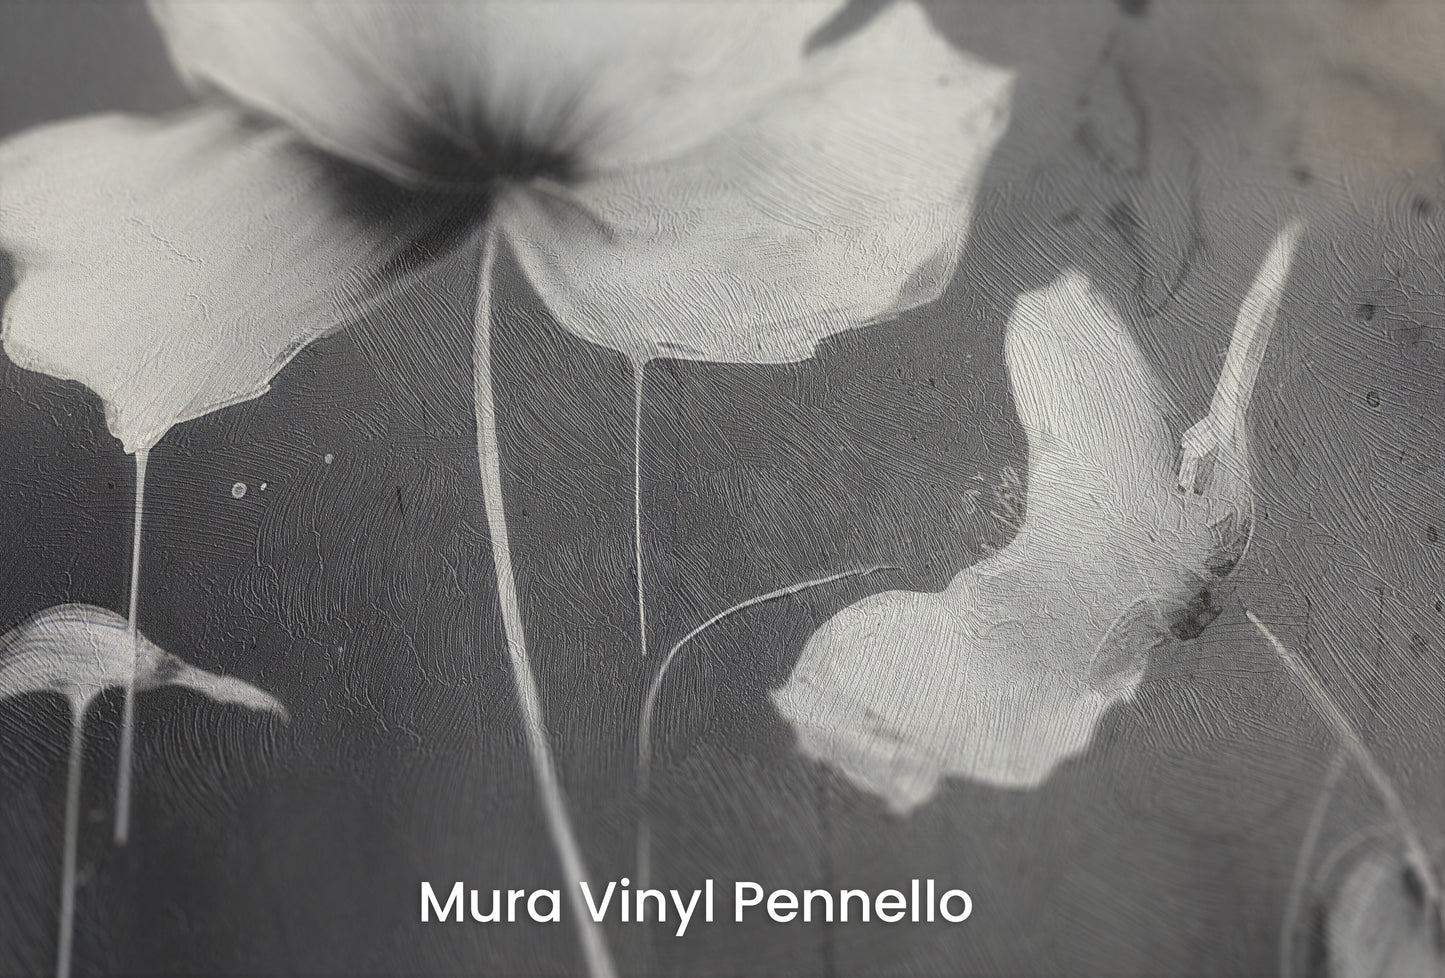 Zbliżenie na artystyczną fototapetę o nazwie MONOCHROME MEADOW na podłożu Mura Vinyl Pennello - faktura pociągnięć pędzla malarskiego.